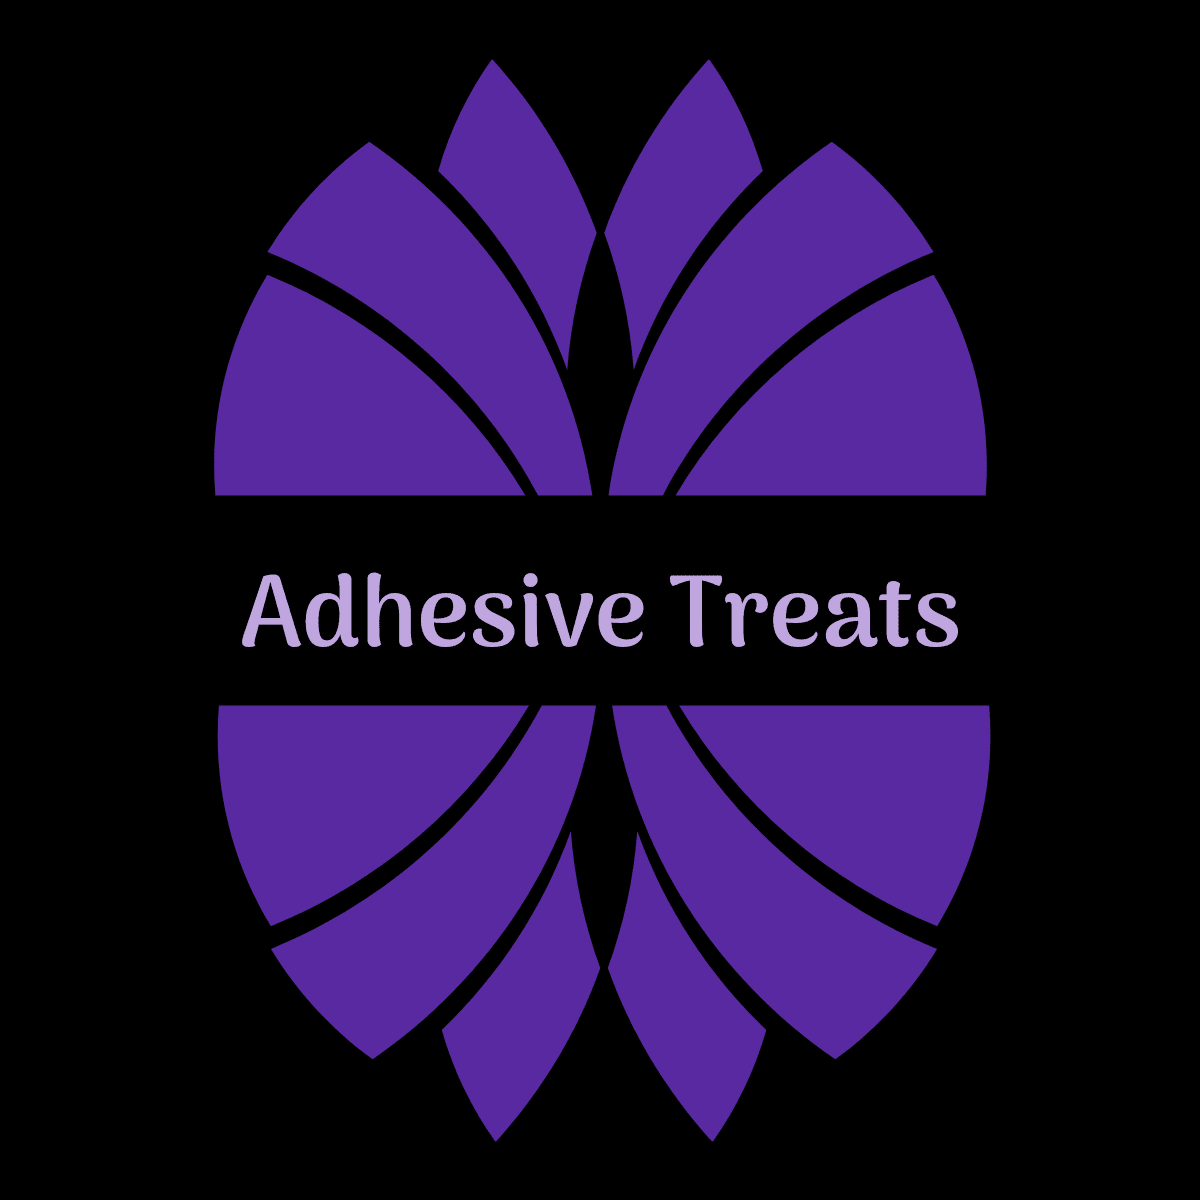 Adhesive Treats